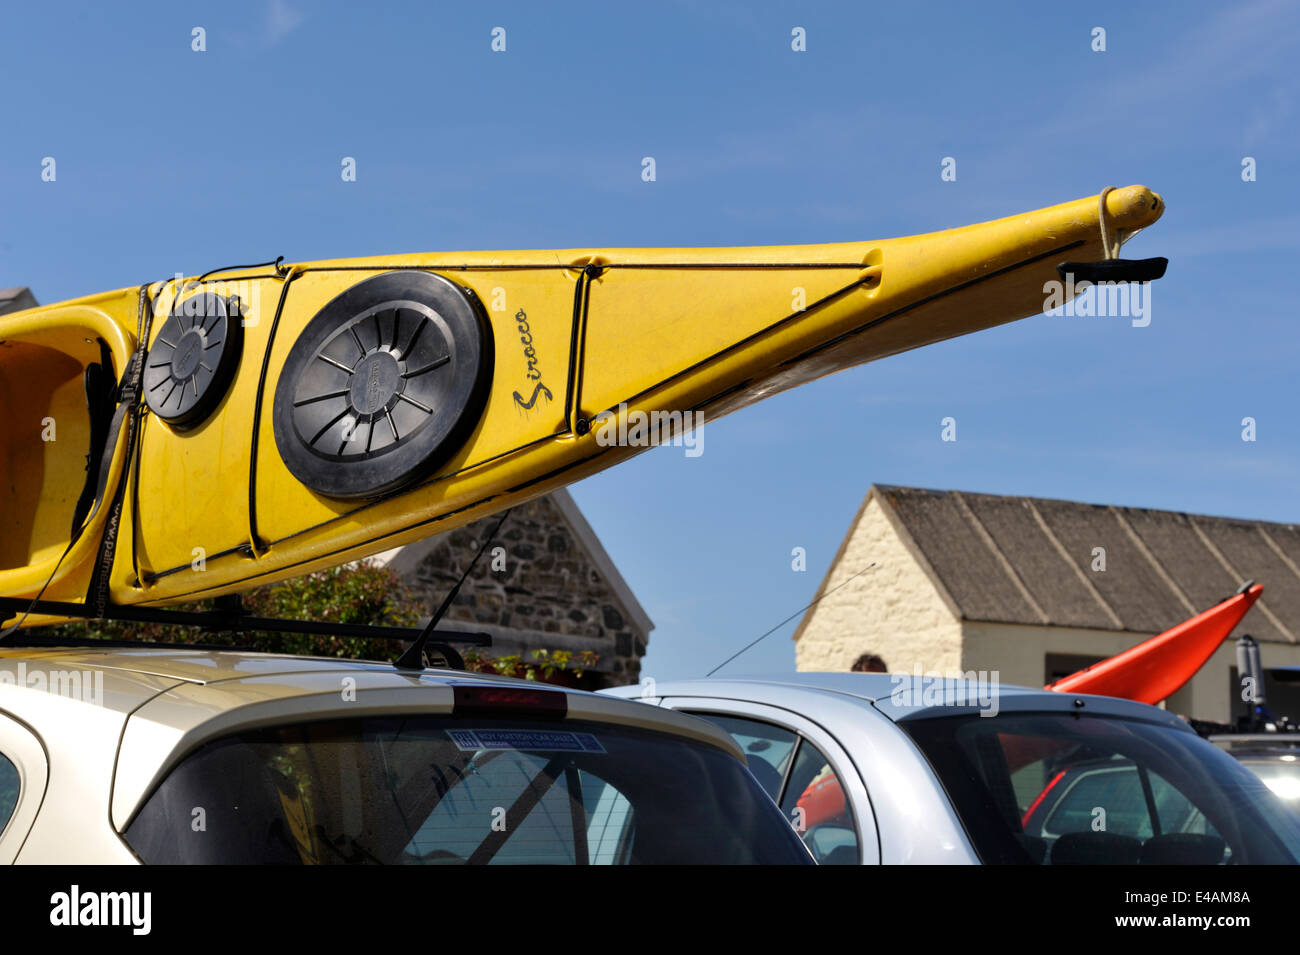 Kajak auf dem Autodach für den transport Stockfoto